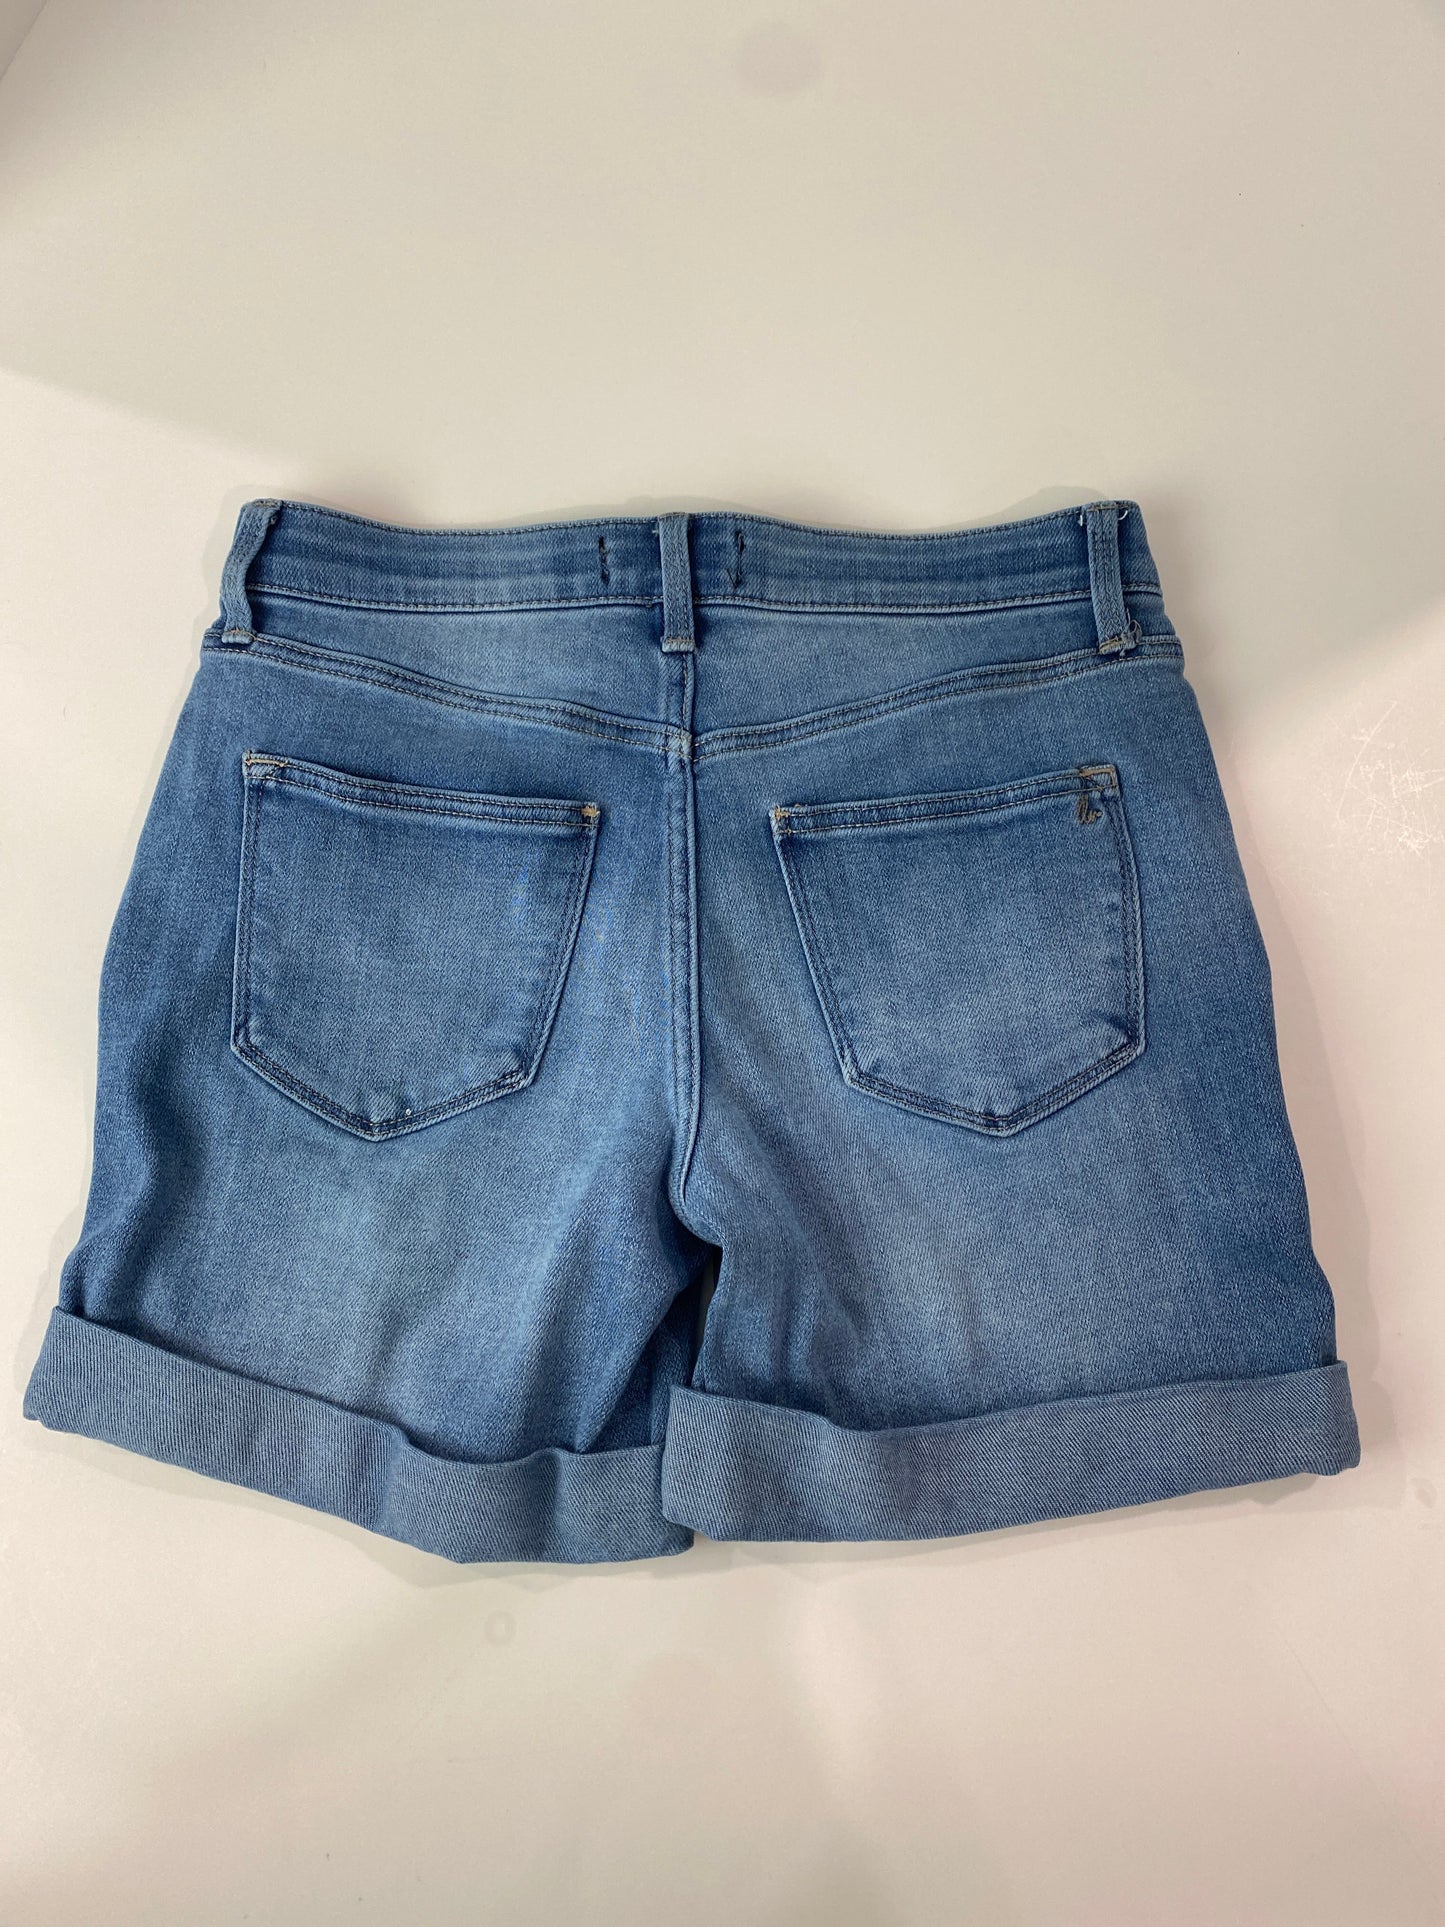 Blue Denim Shorts Lularoe, Size 2